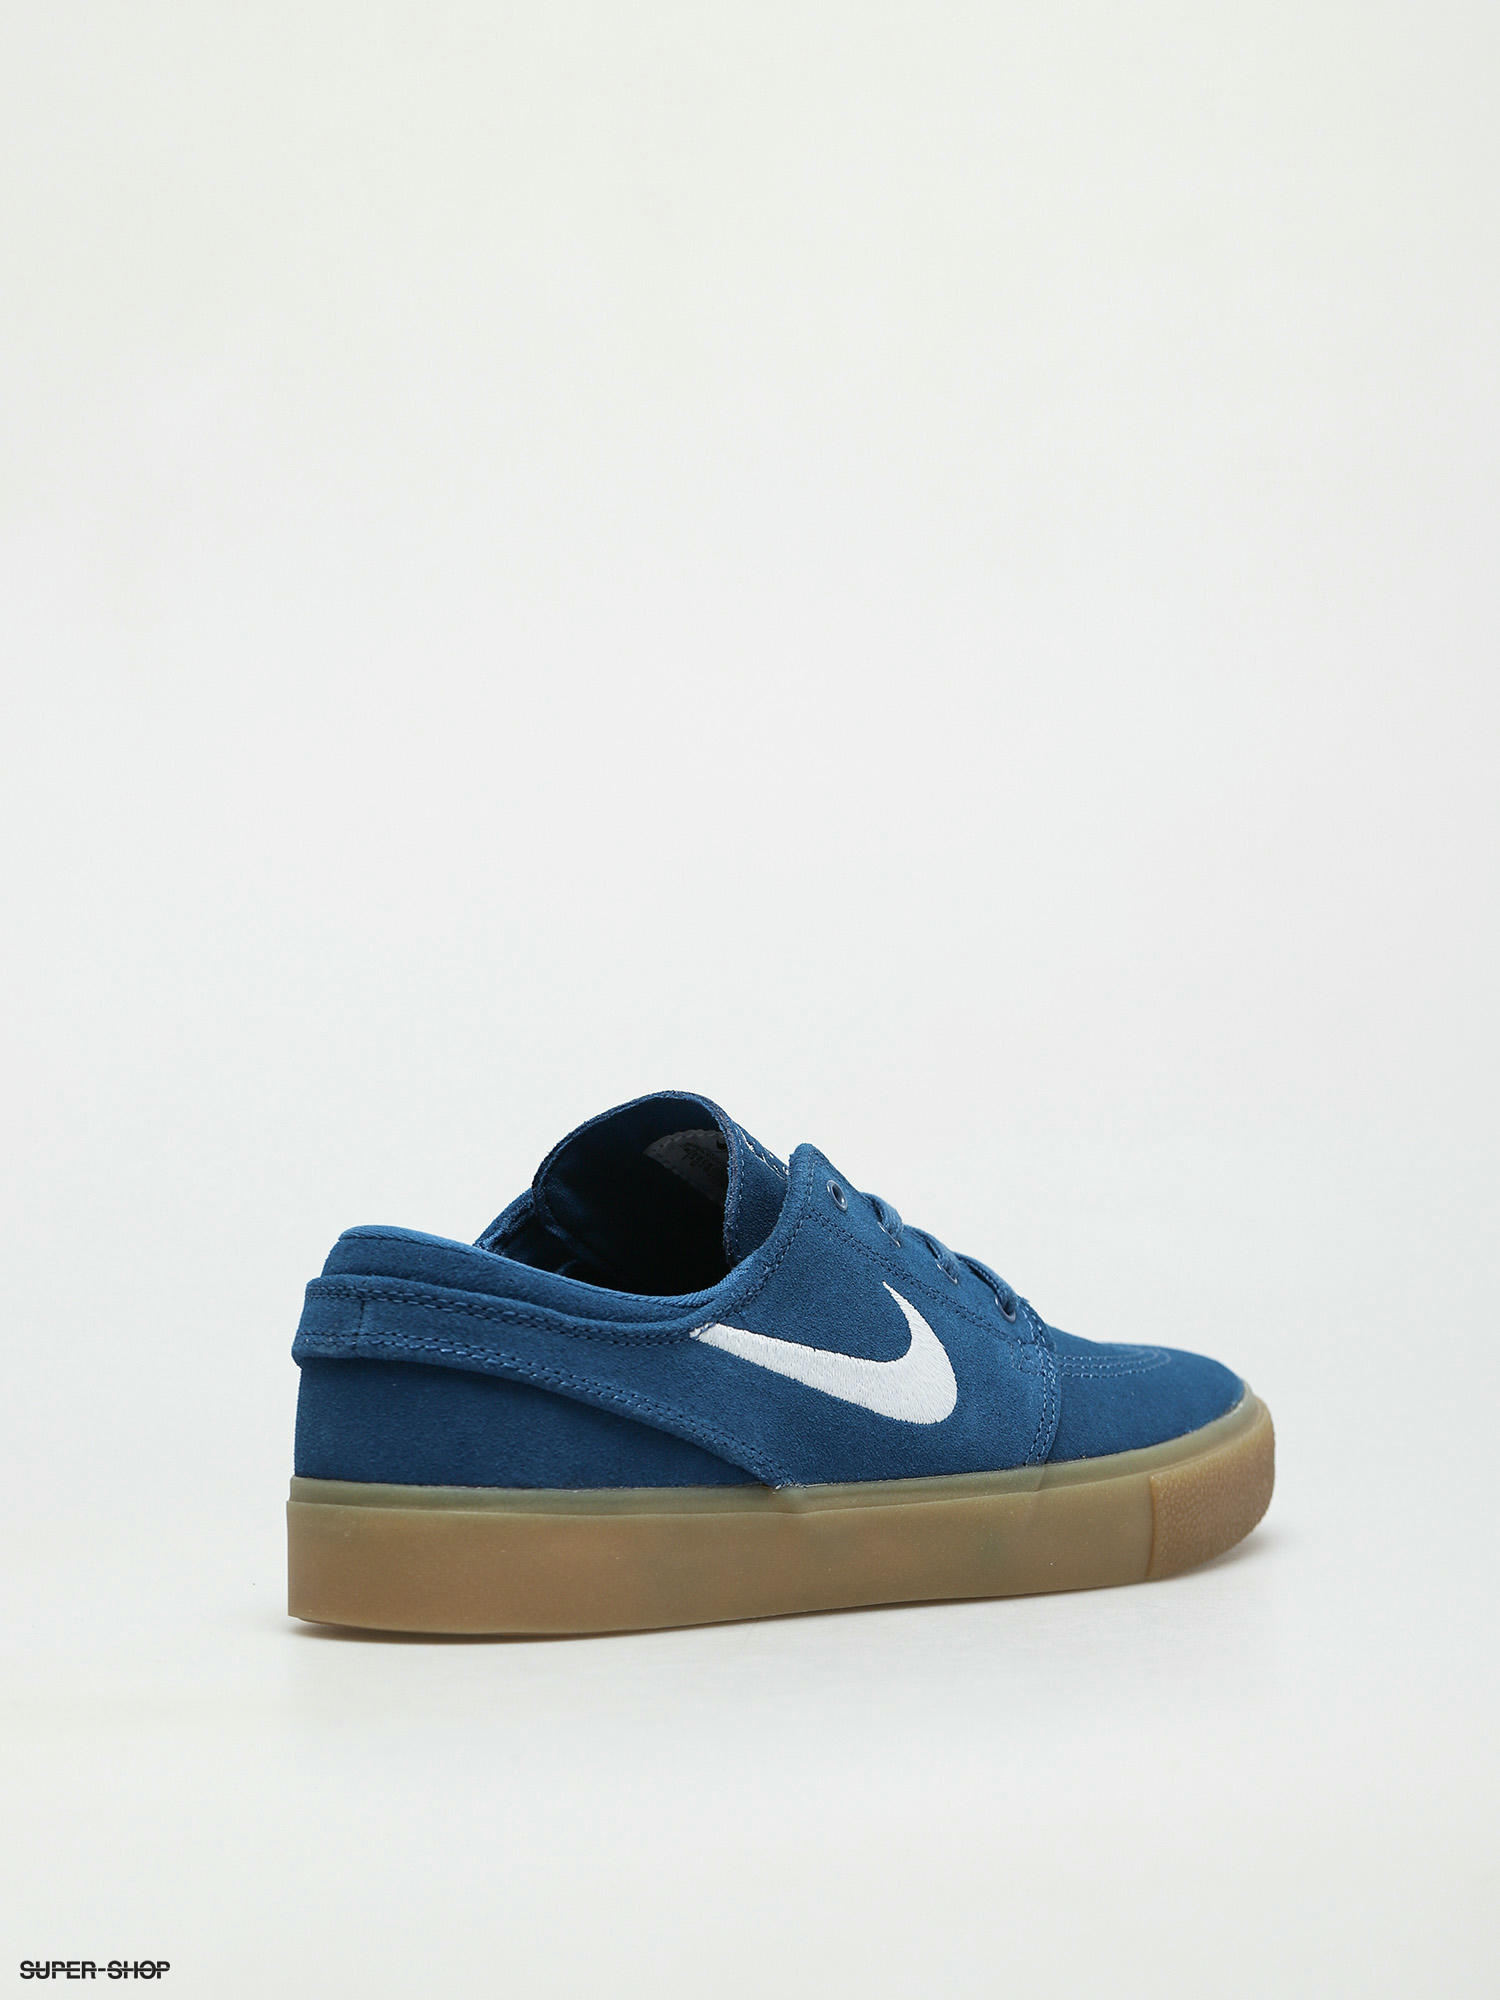 Stefan Janoski RM Shoes (court court blue)